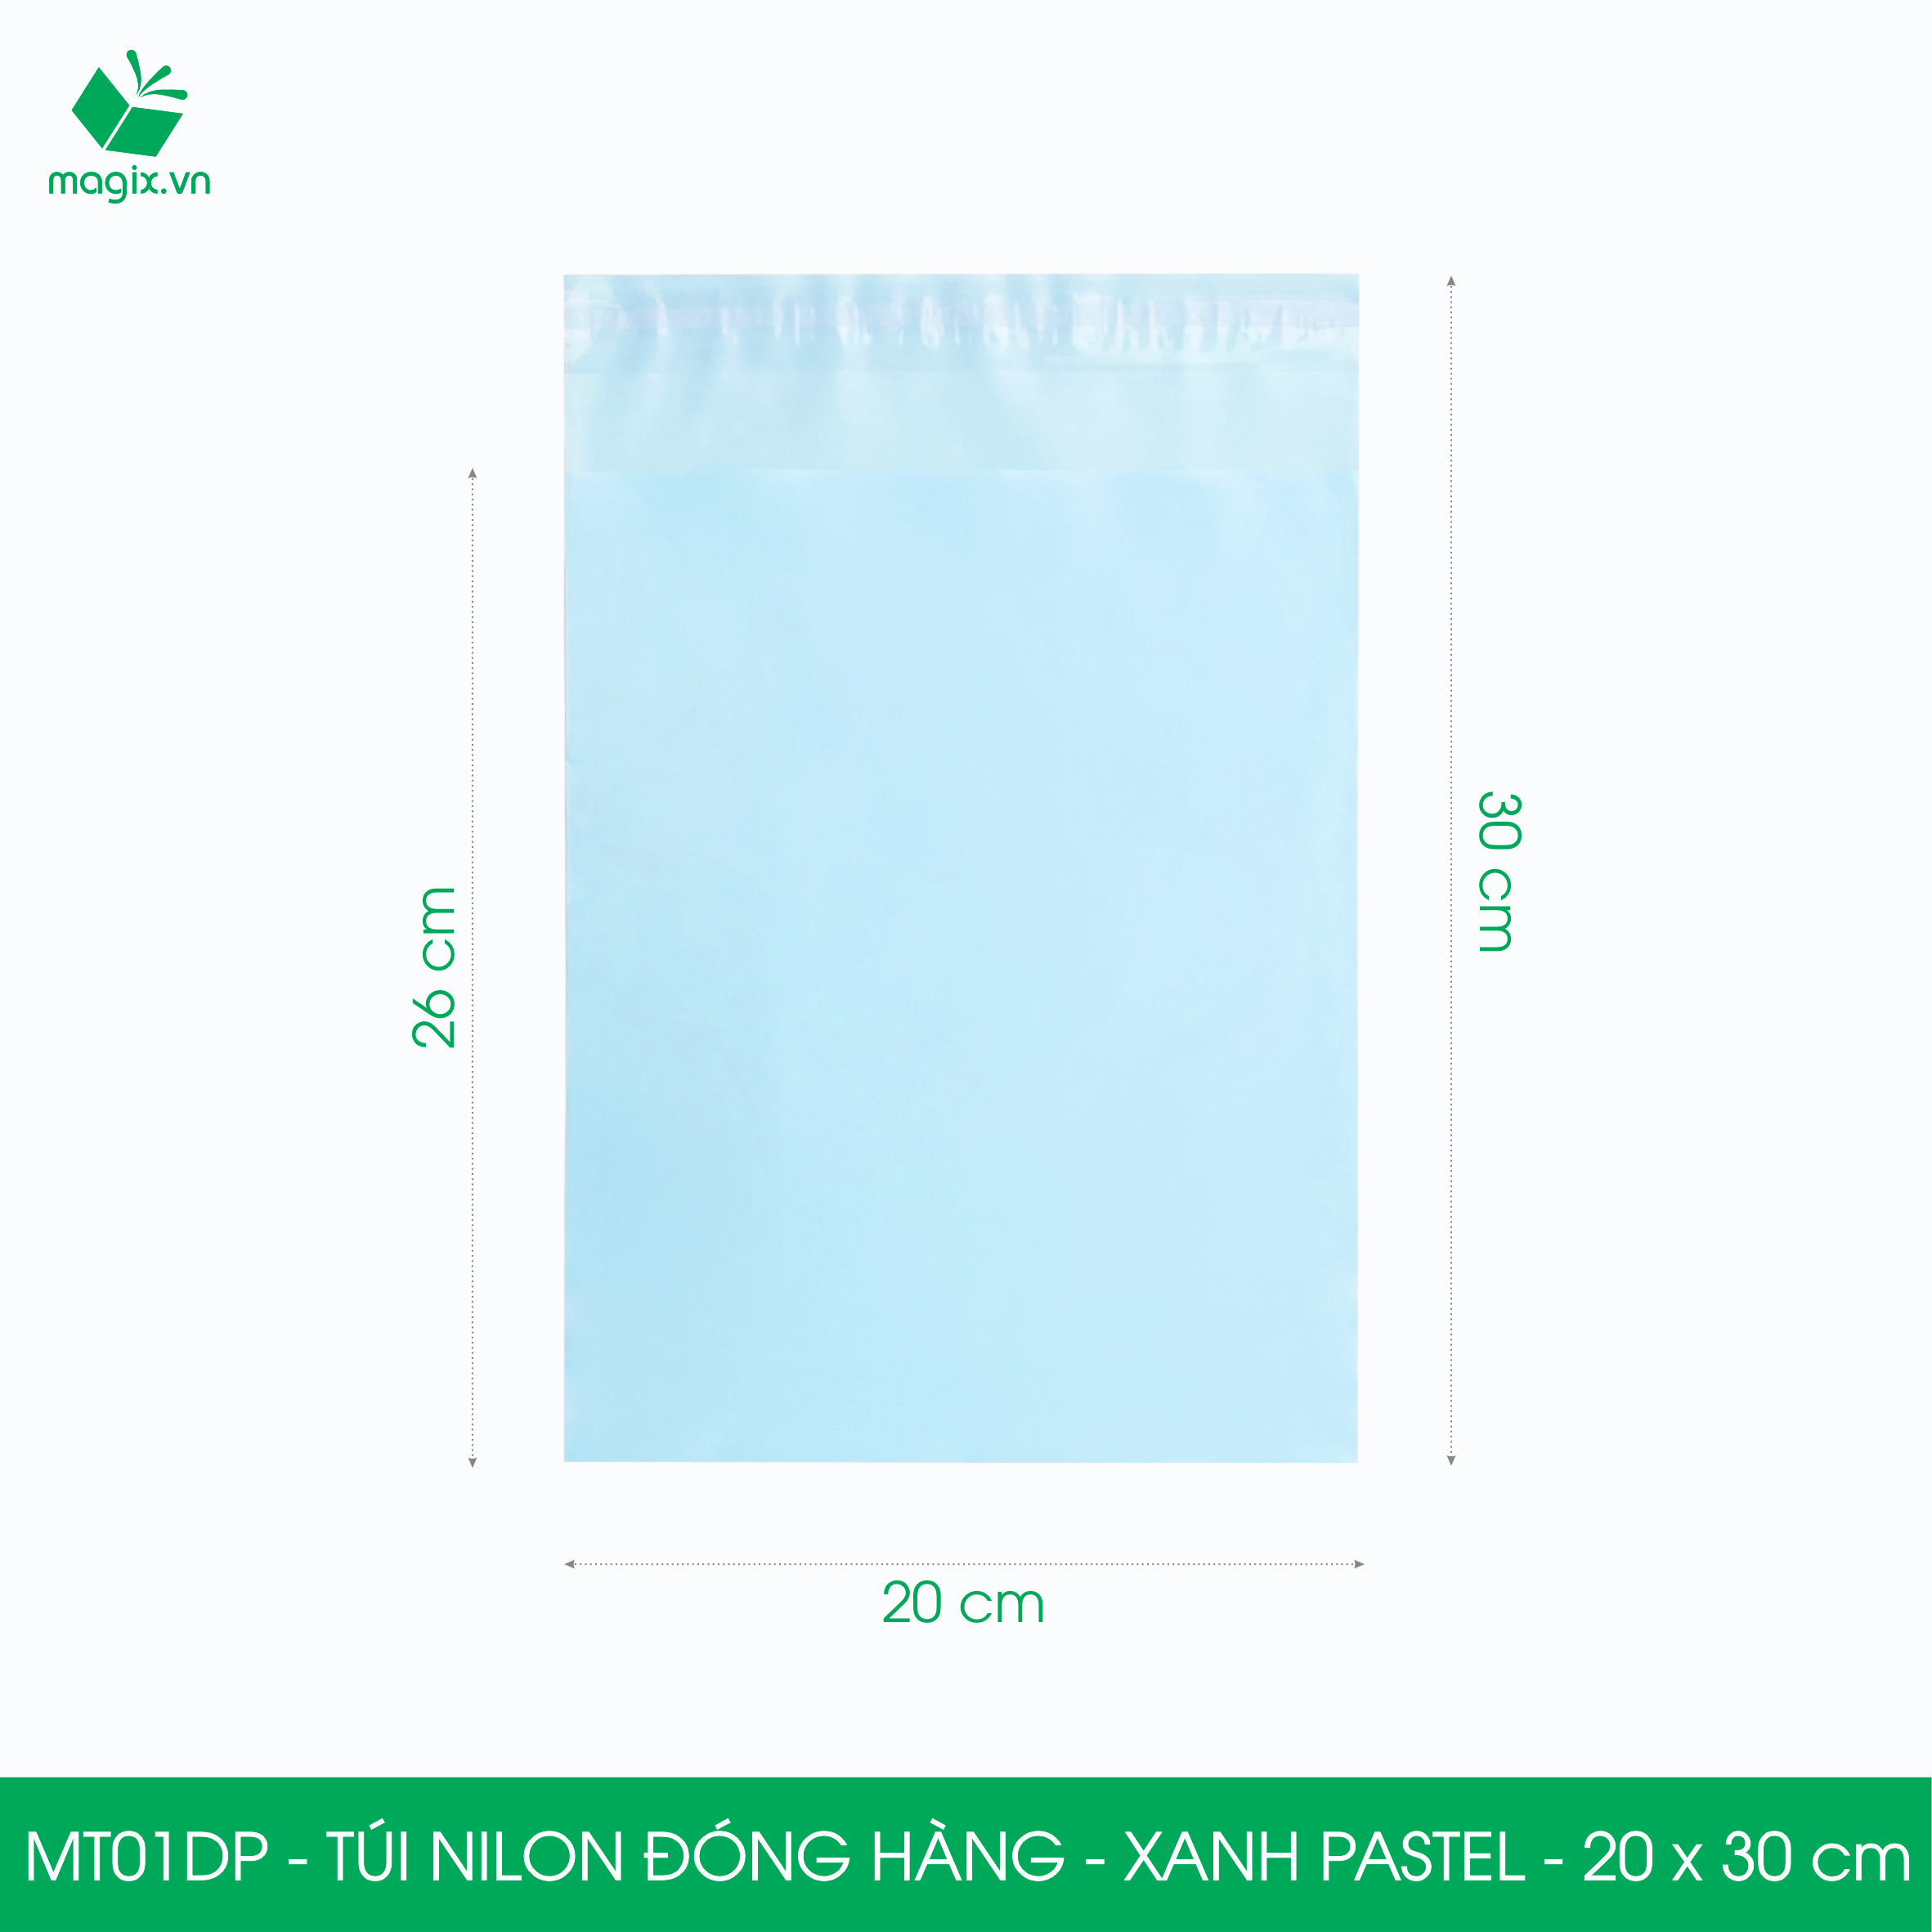 MT01DP - 20x30 cm - Túi nilon gói hàng - 300 túi niêm phong đóng hàng màu xanh pastel